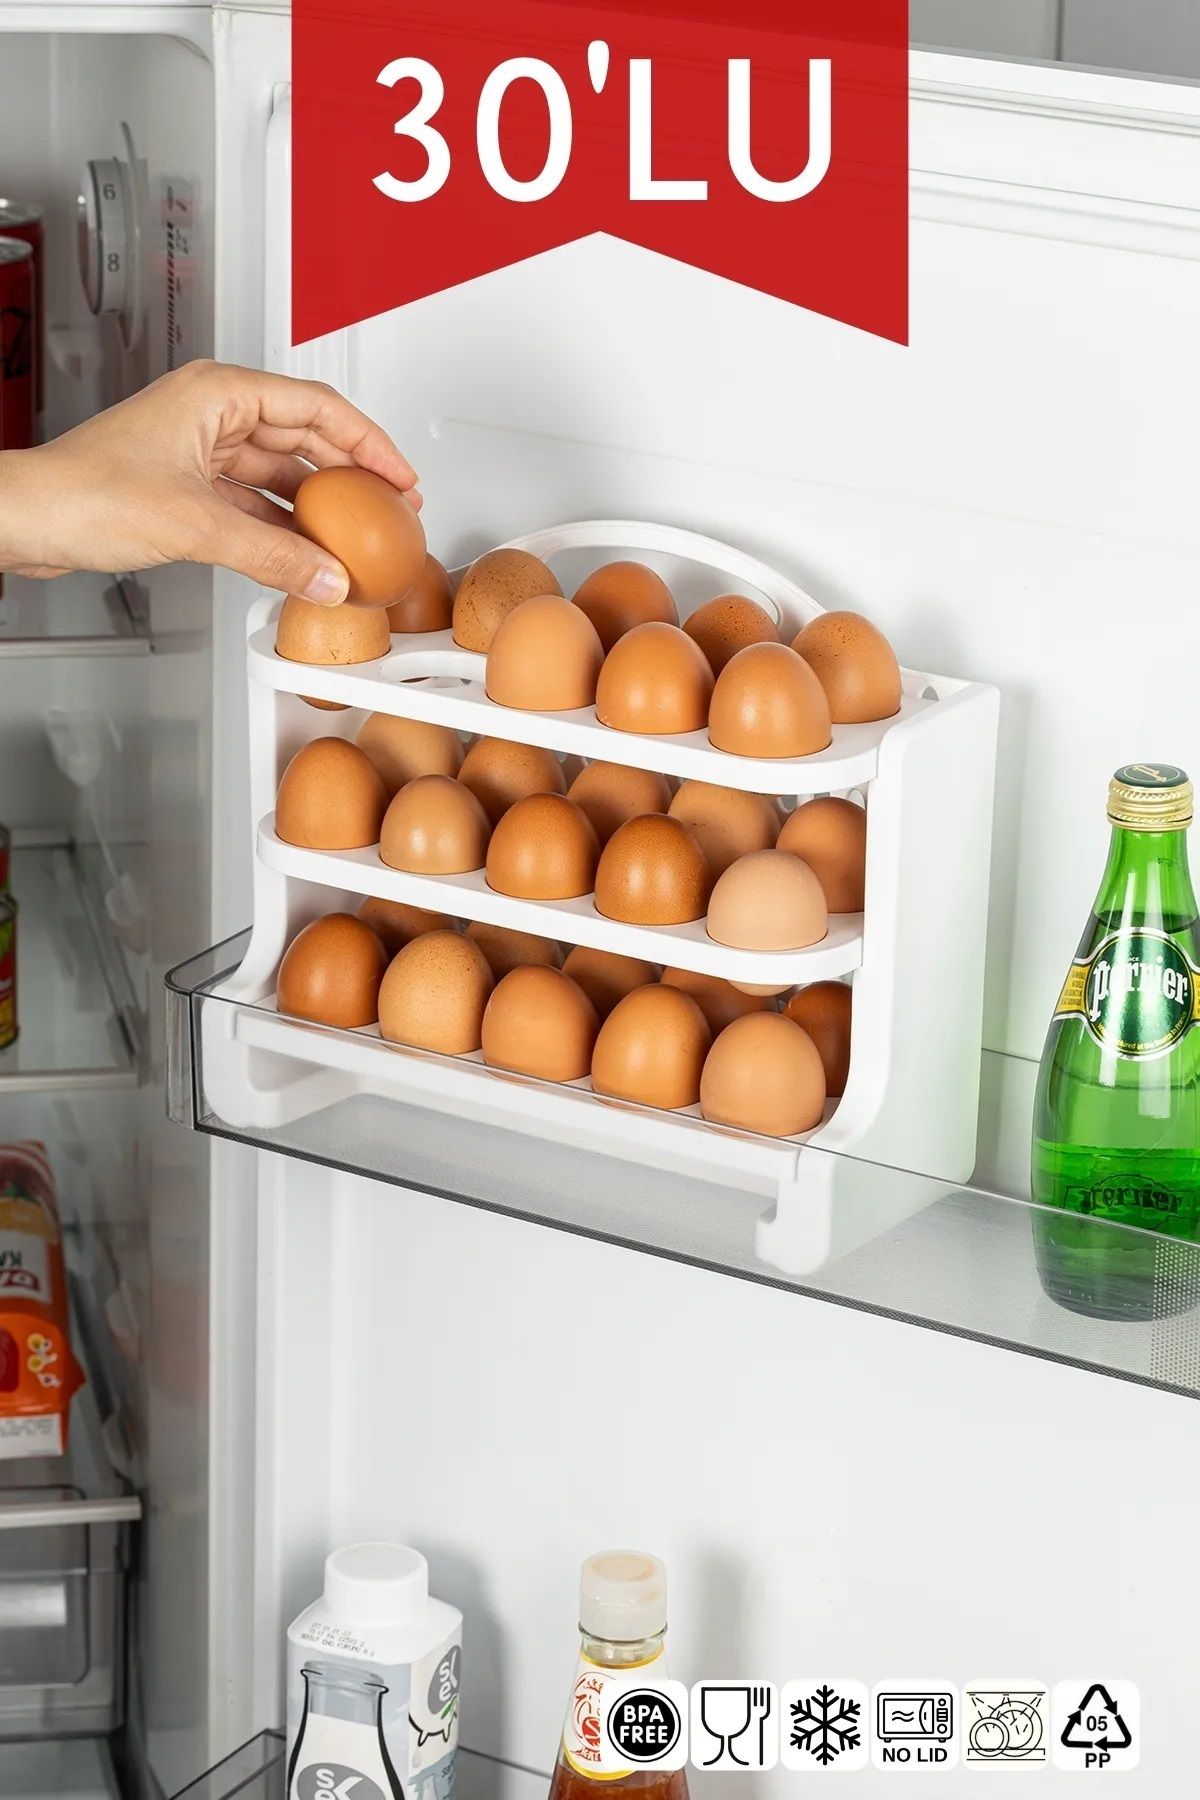 Open Home Concept 3 Katlı Buzdolabı İçi Yumurtalık Organizeri